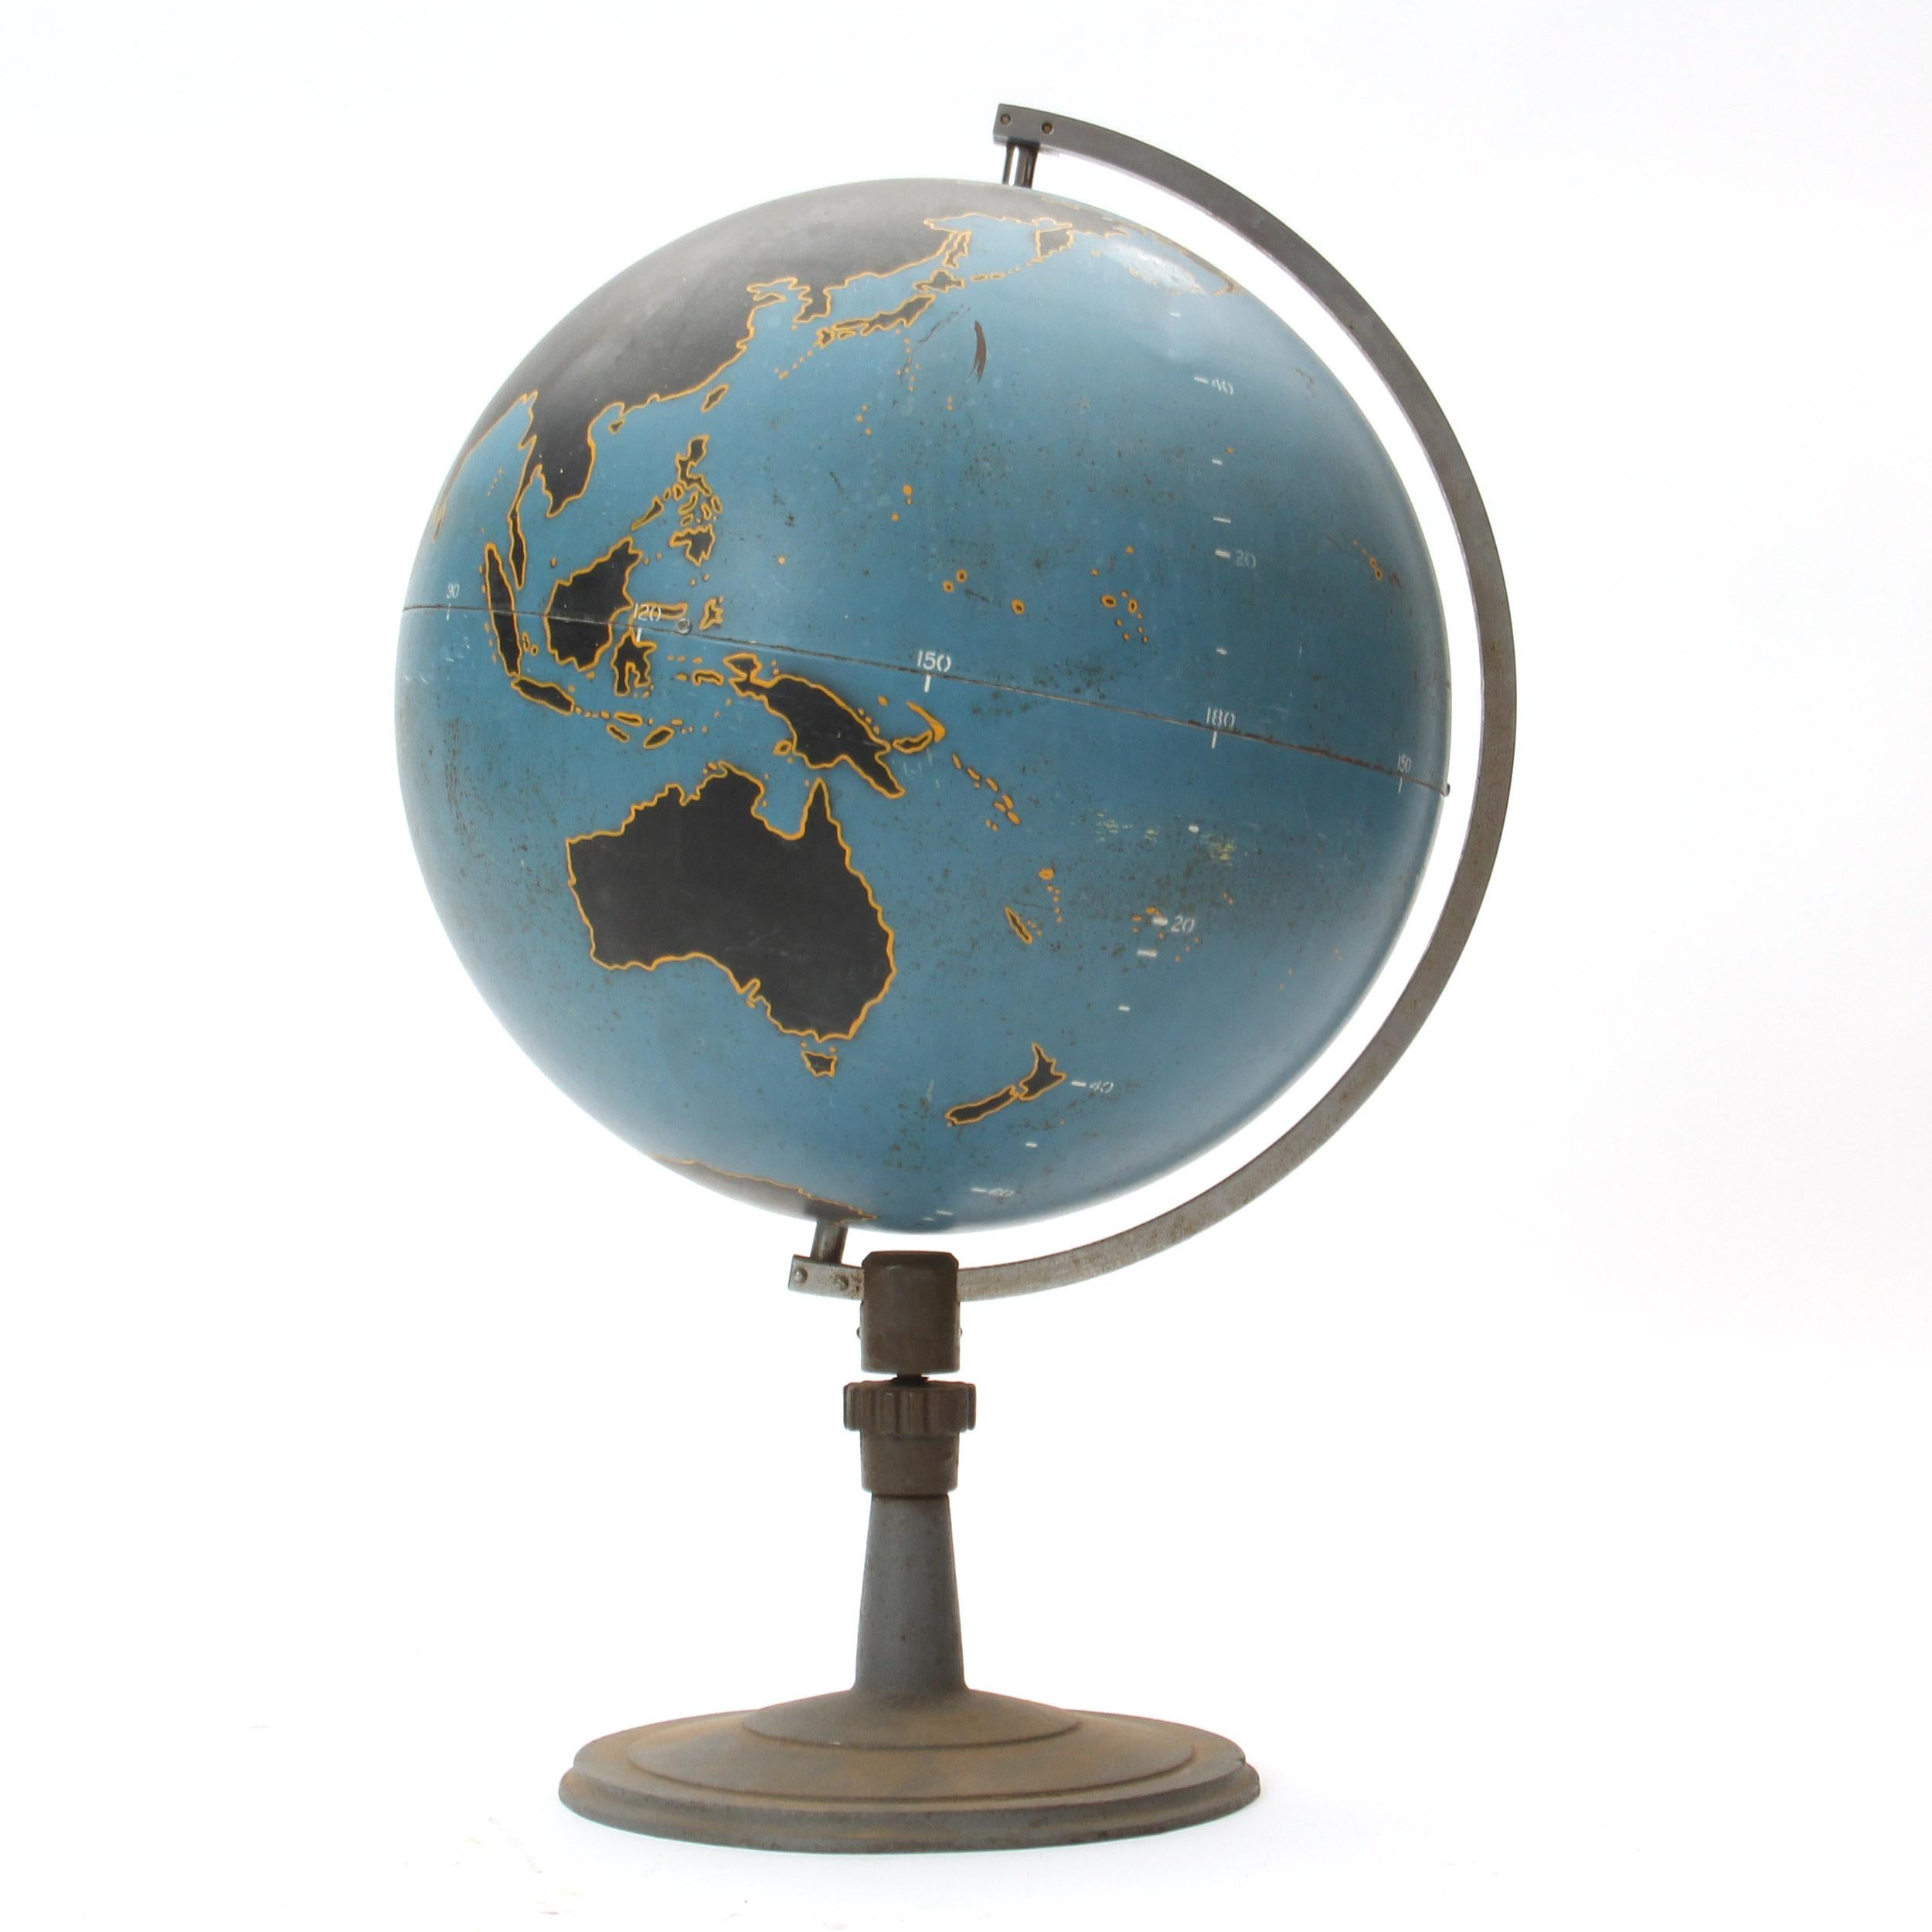 Un globe didactique graphique et finement fabriqué en acier filé monté sur un support lesté.